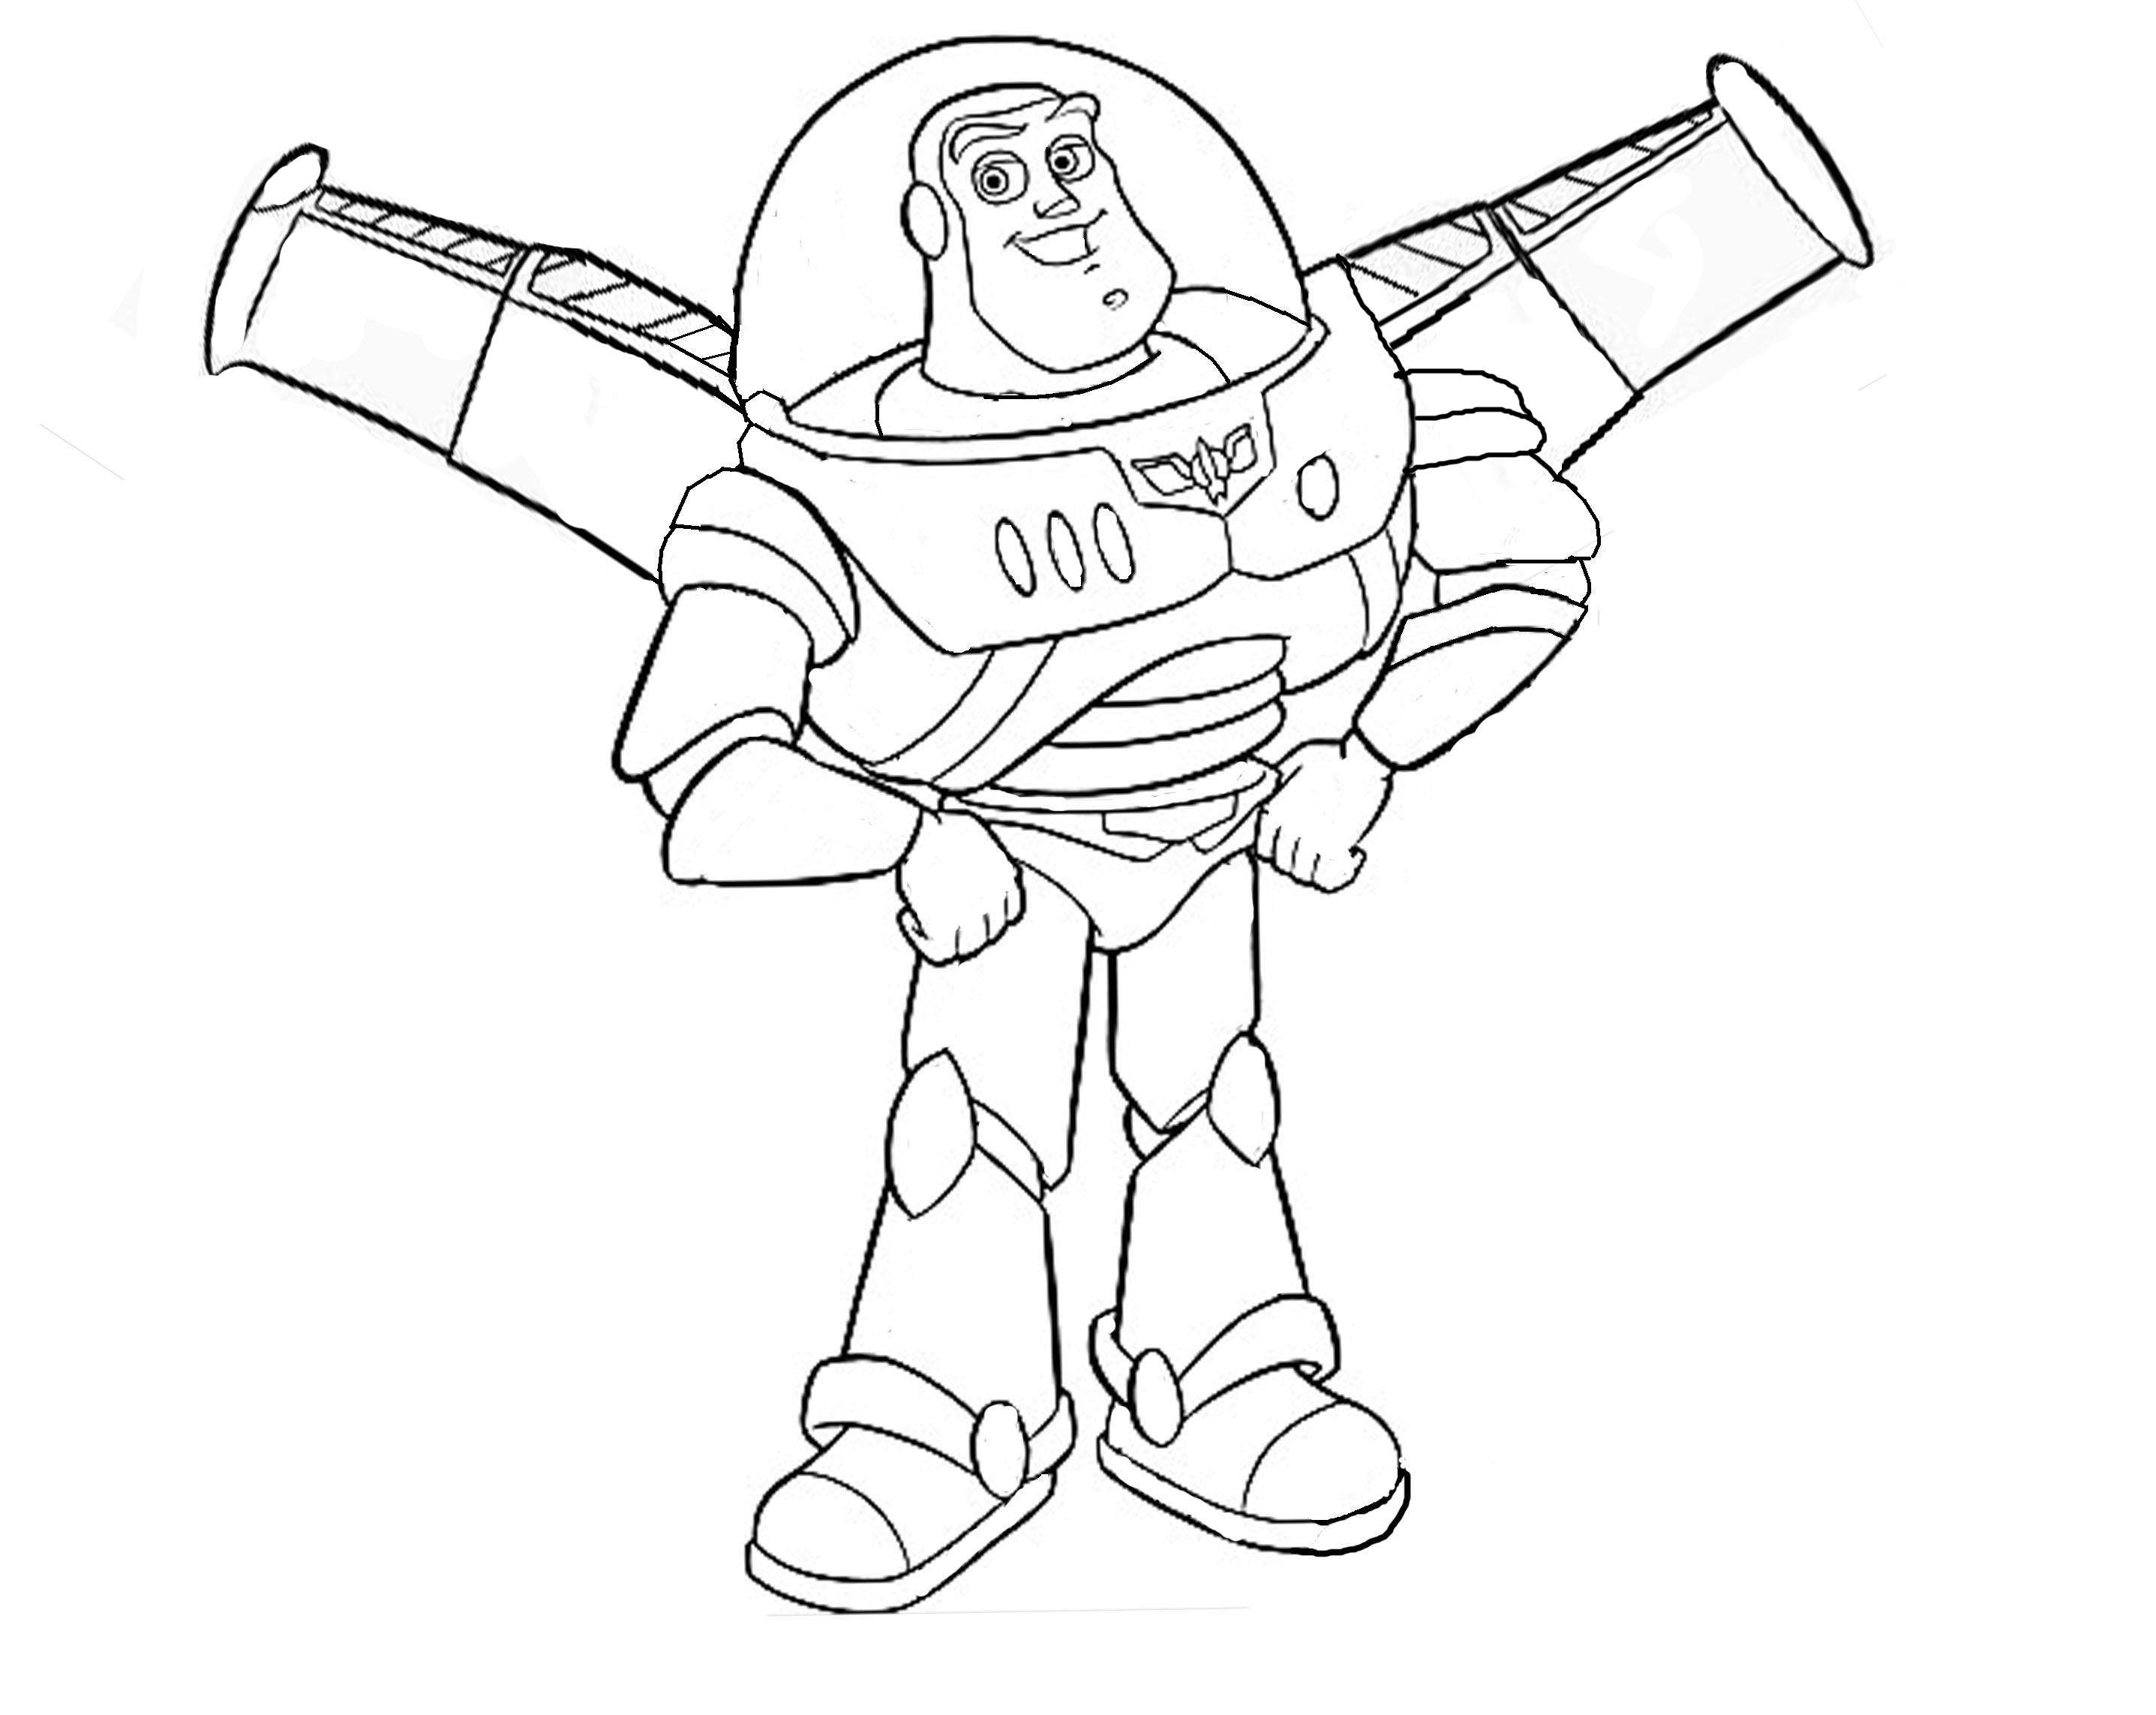 Buzz Lightyear está muito orgulhoso da sua armadura/ fato